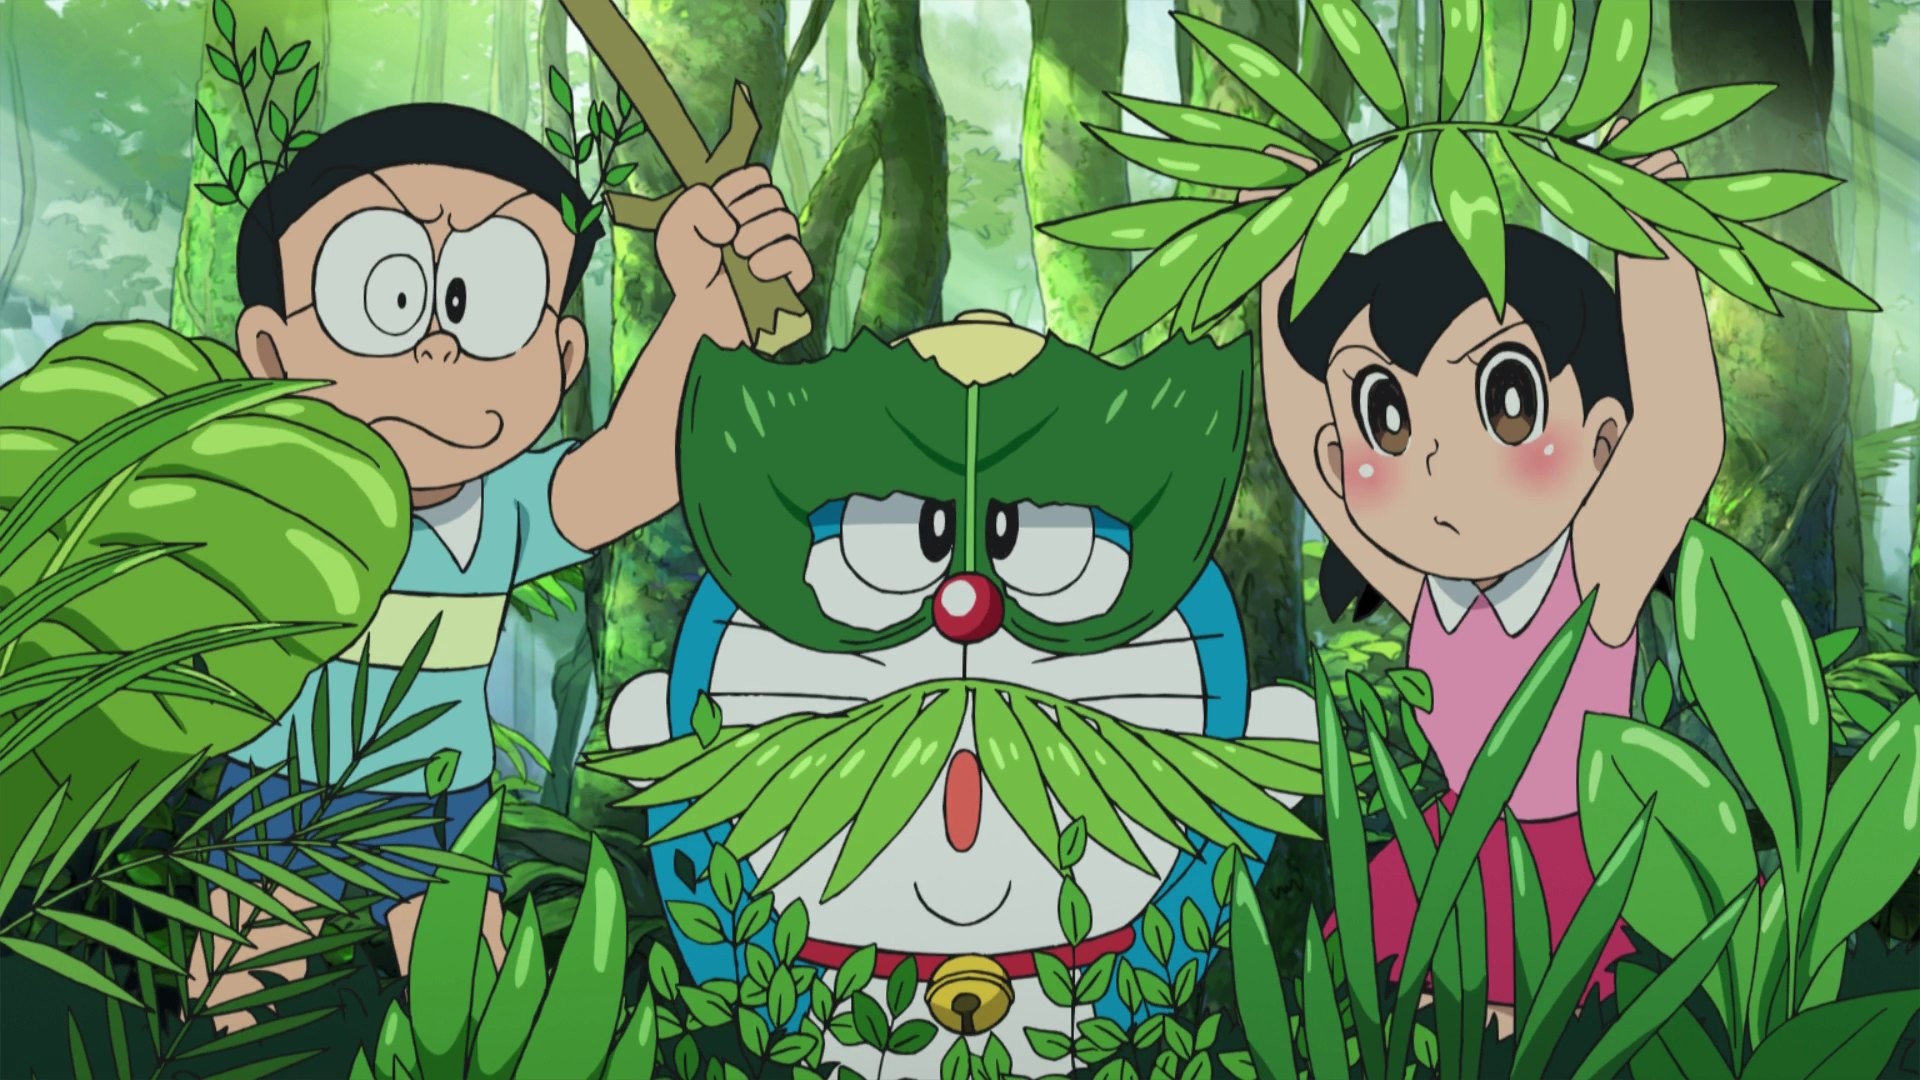 Doraemon và bạn bè hình nền 2018: Kho hình nền Doraemon của chúng tôi vừa được cập nhật những bức ảnh mới nhất của Doraemon và nhóm bạn thân thích khám phá, giải trí và trải nghiệm cuộc sống. Cùng hòa mình vào những cuộc phiêu lưu đầy vui nhộn cùng siêu robot mèo xanh và bạn bè đáng yêu của anh chàng trong suốt năm